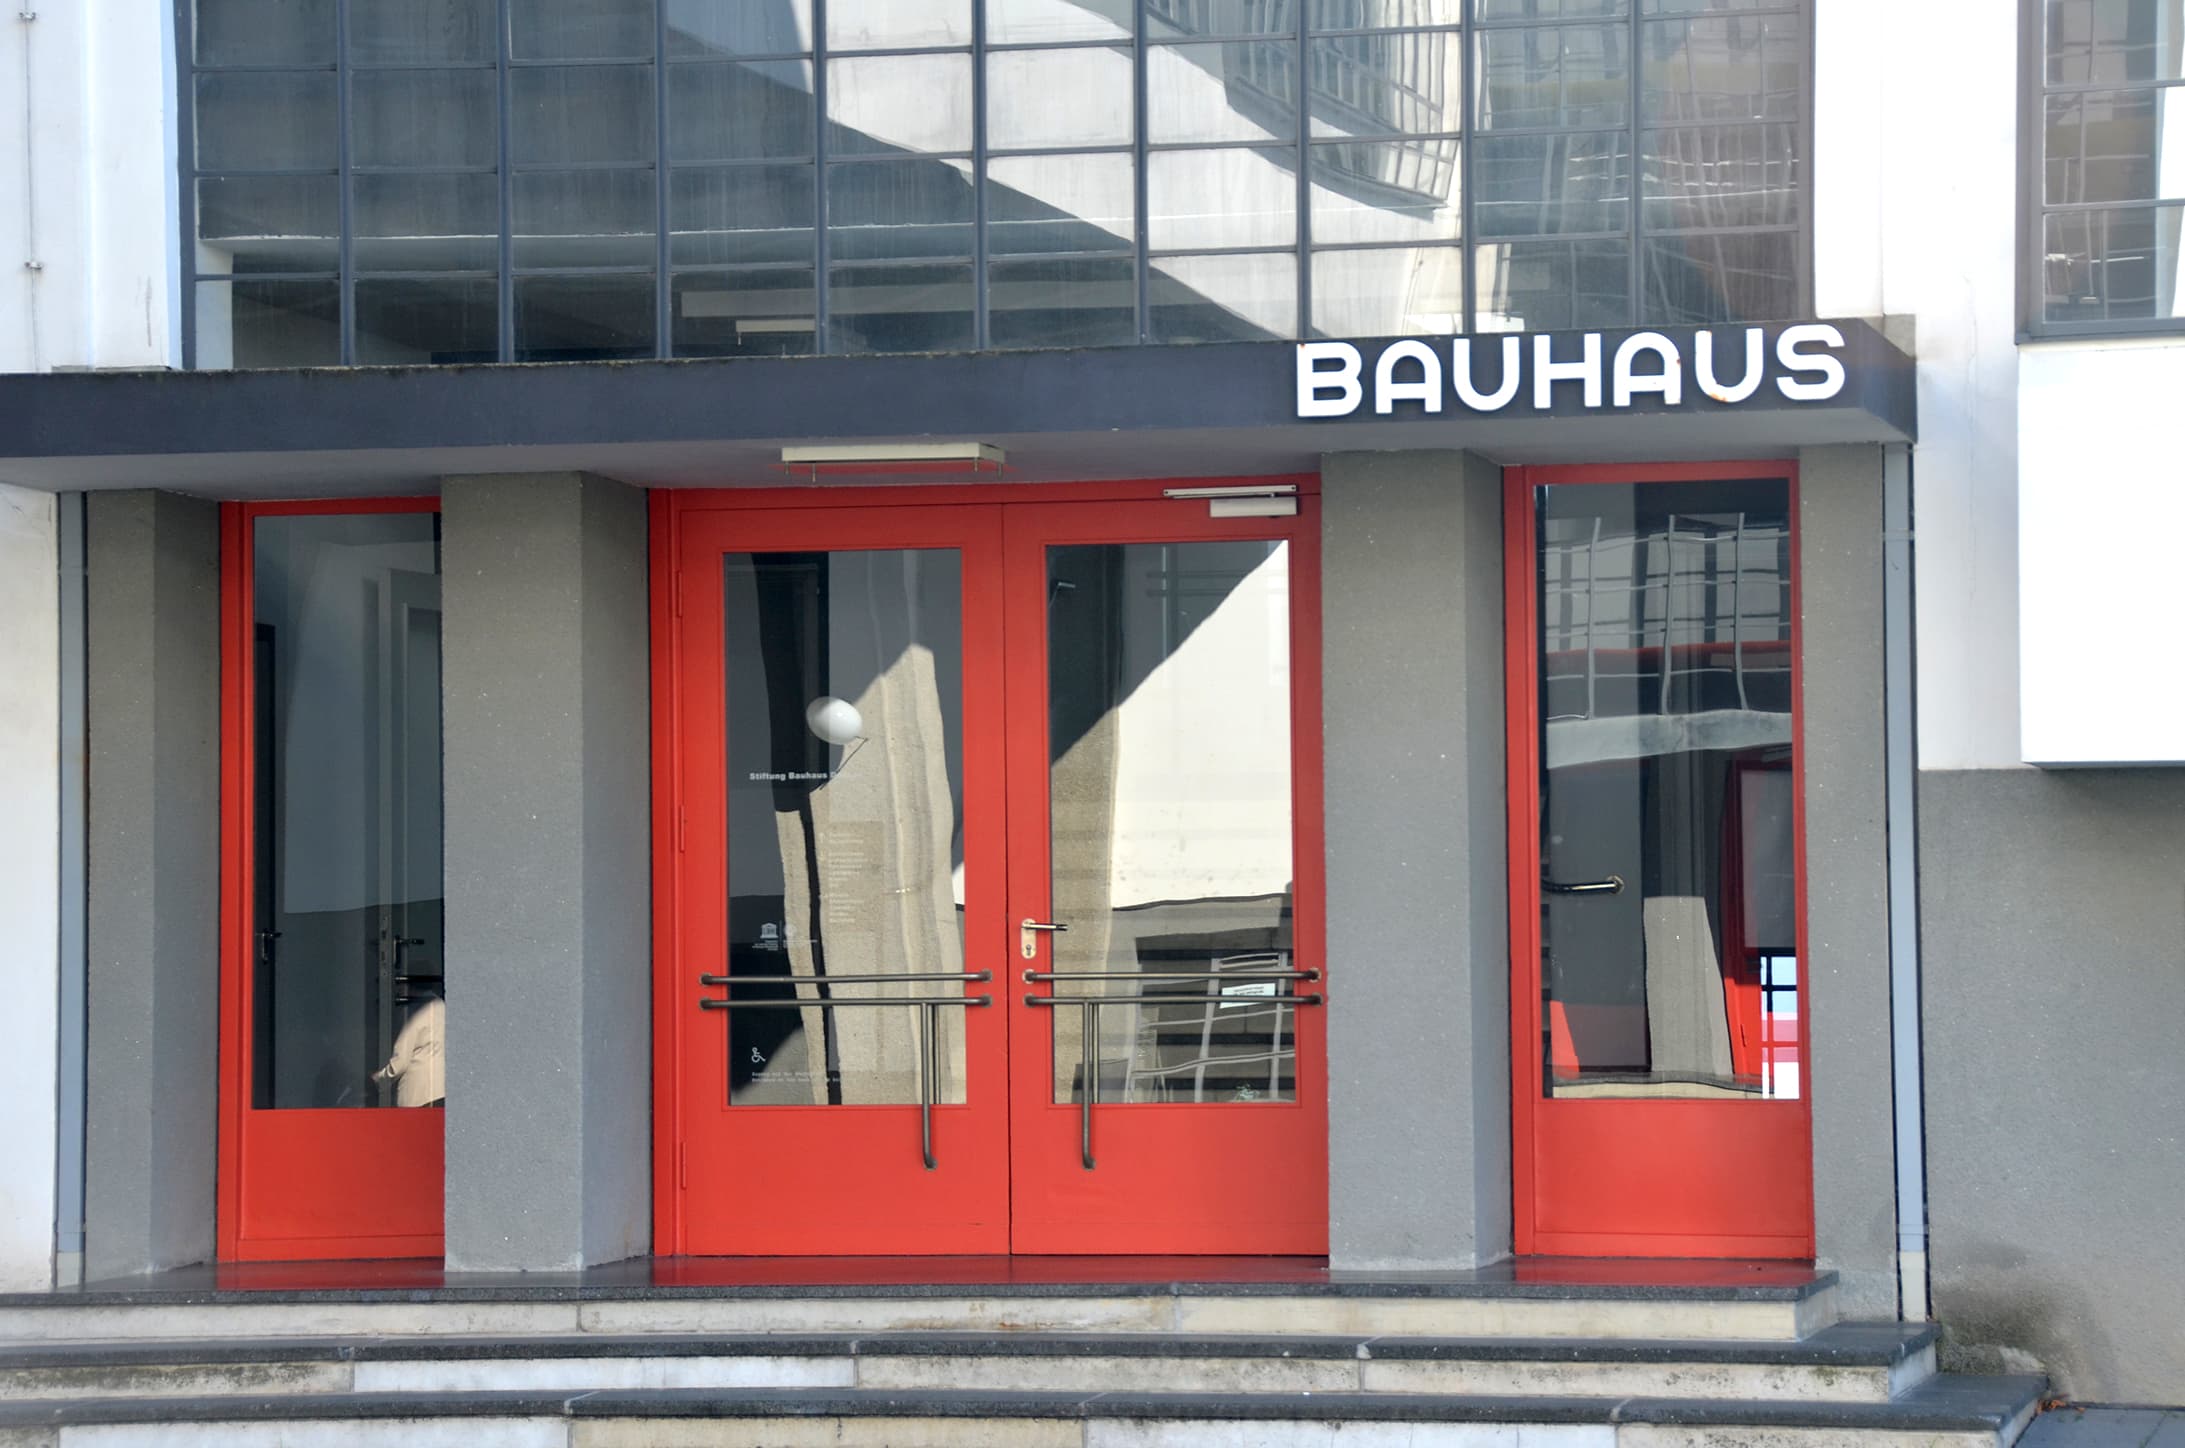 Eingang zum Bauhaus in Dessau